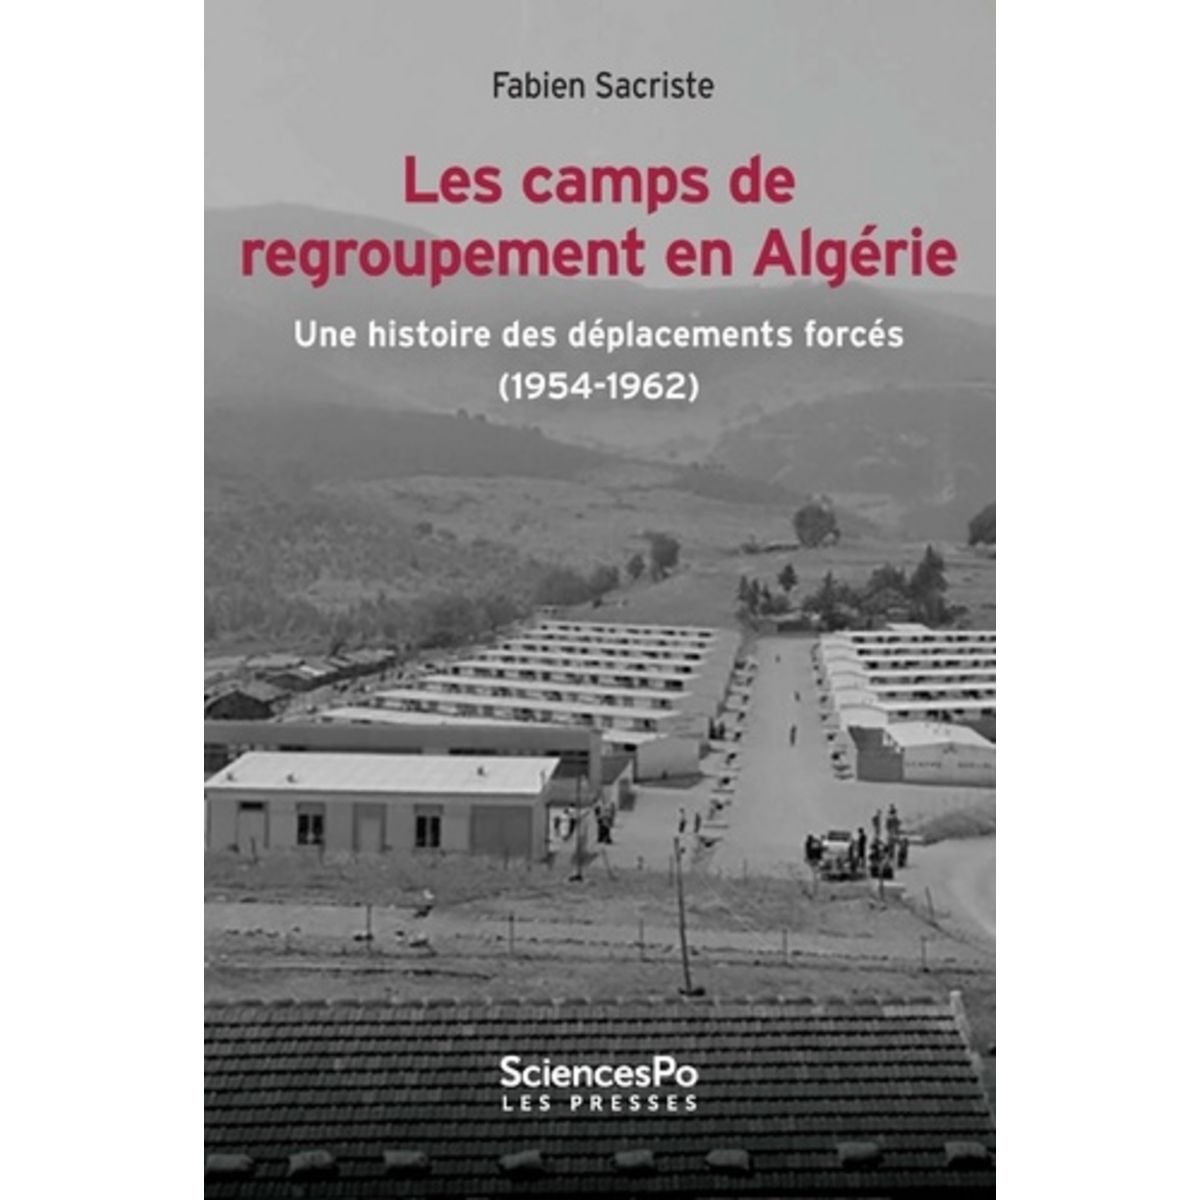  LES CAMPS DE REGROUPEMENT EN ALGERIE. UNE HISTOIRE DES DEPLACEMENTS FORCES (1954-1962), Sacriste Fabien